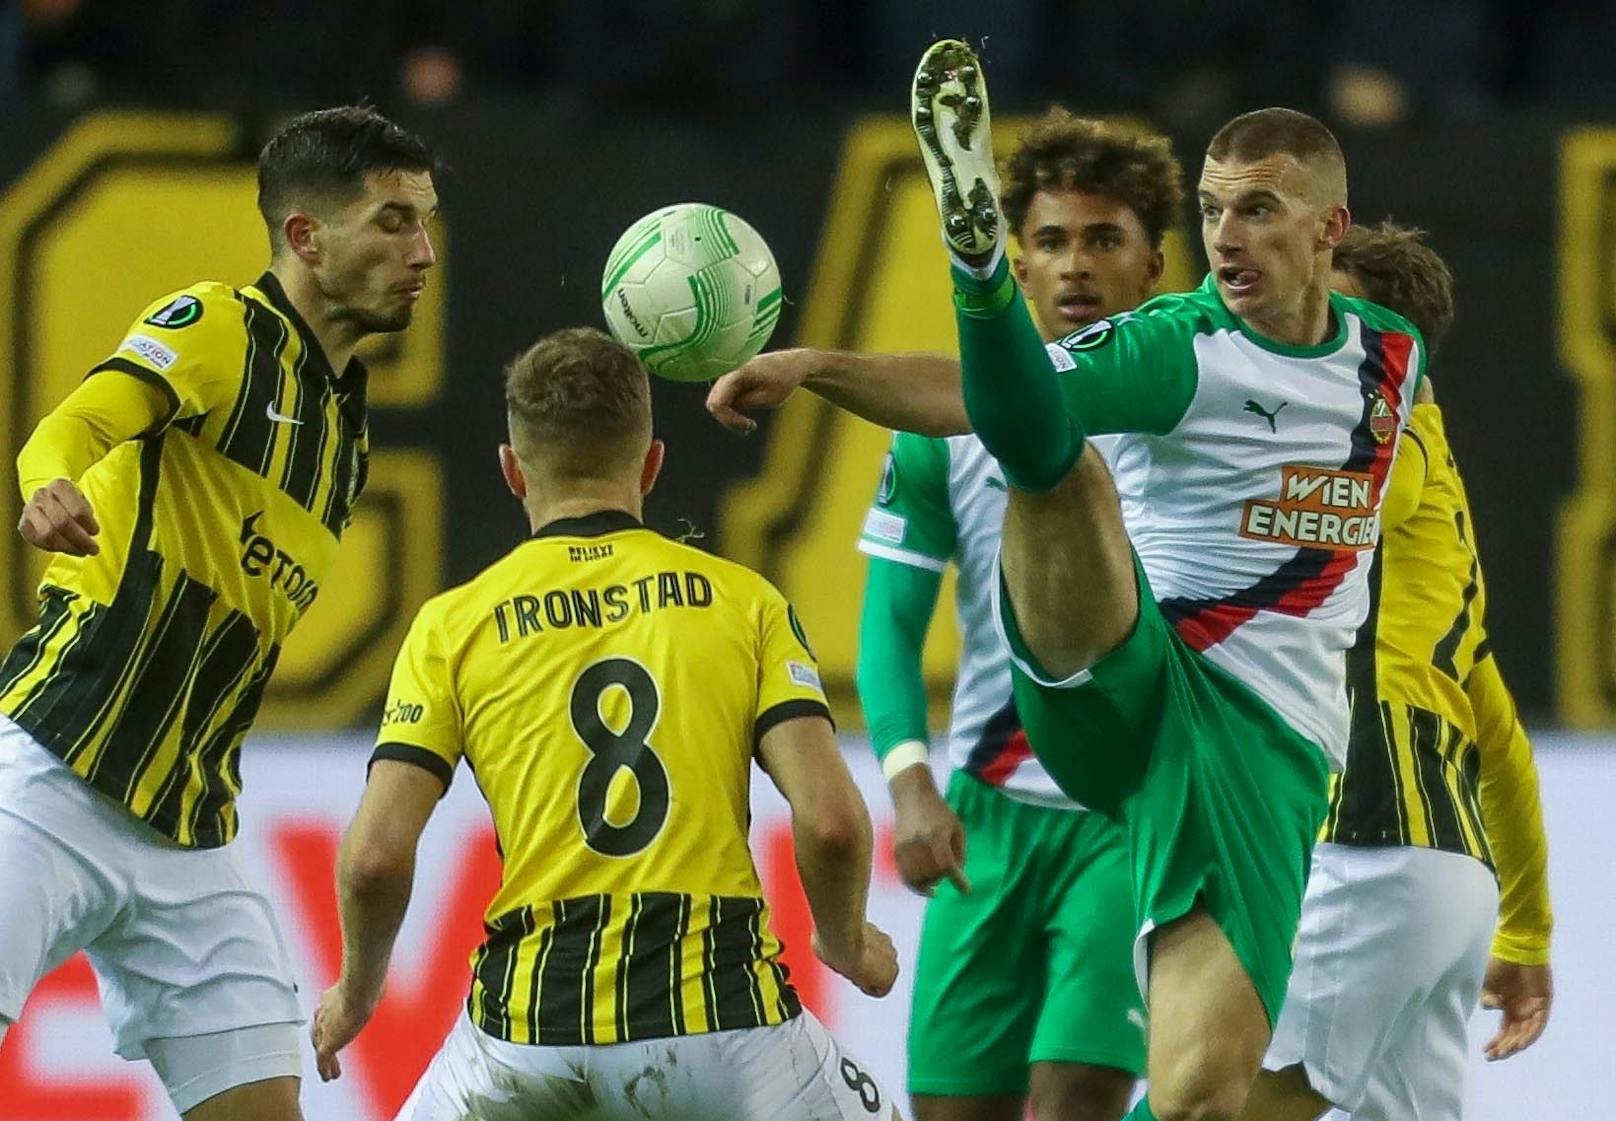 Es folgte das Aus im Europacup. Das Rückspiel gegen Arnheim ging mit 0:2 verloren, damit war im Sechzehntelfinale der Conference League Endstation.